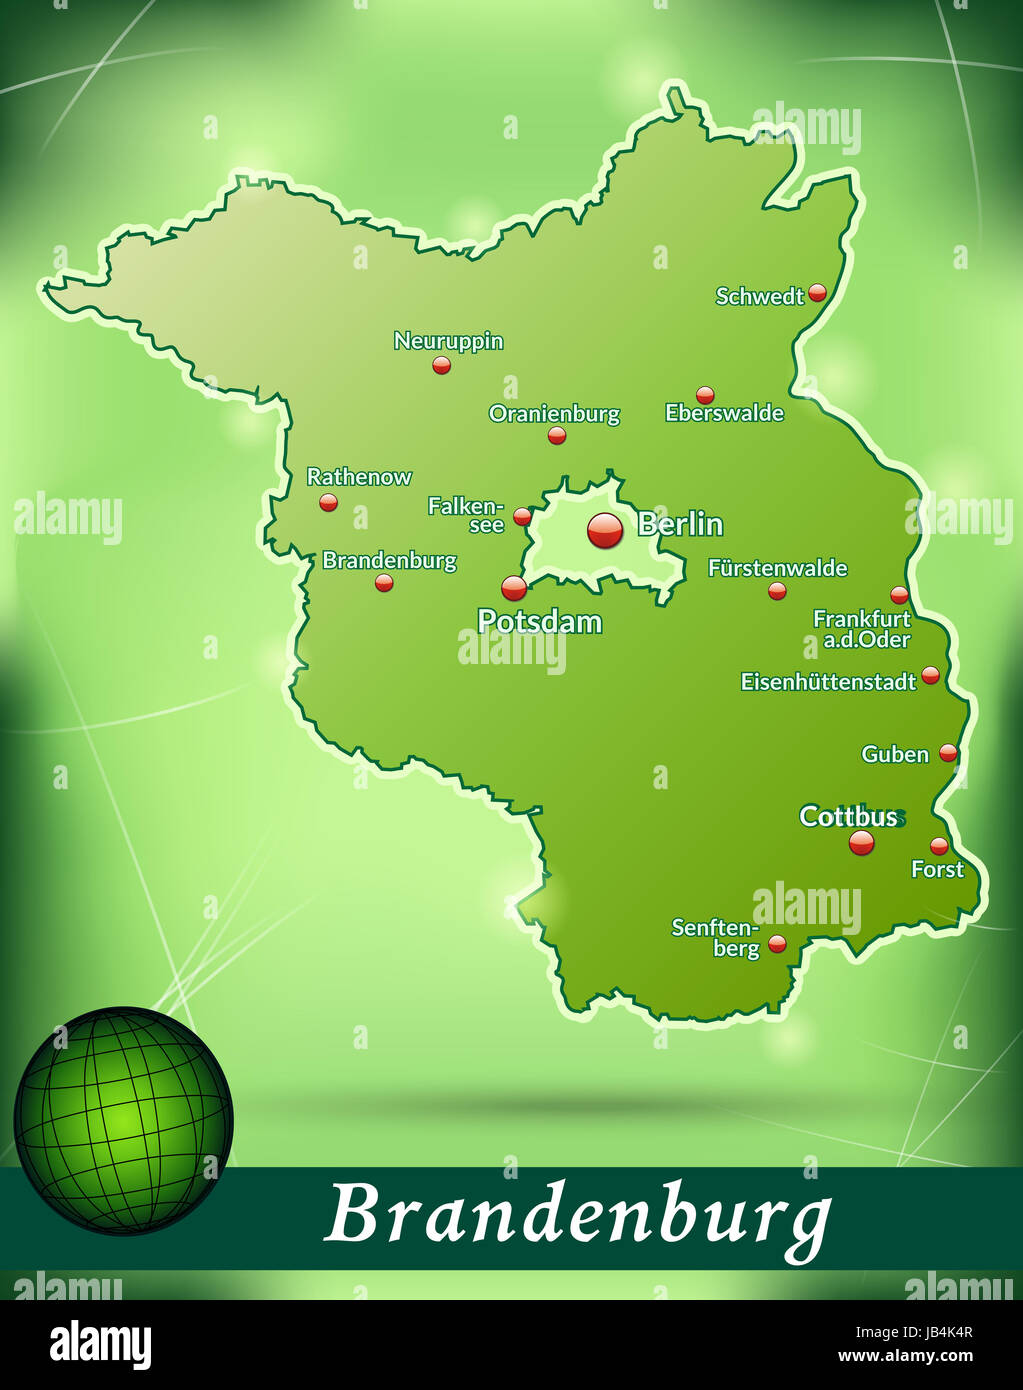 Brandeburgo in Deutschland als Inselkarte mit abstraktem Hintergrund in Grün. Durch die ansprechende Gestaltung fügt sich die Karte perfekt in Ihr Vorhaben ein. Foto Stock